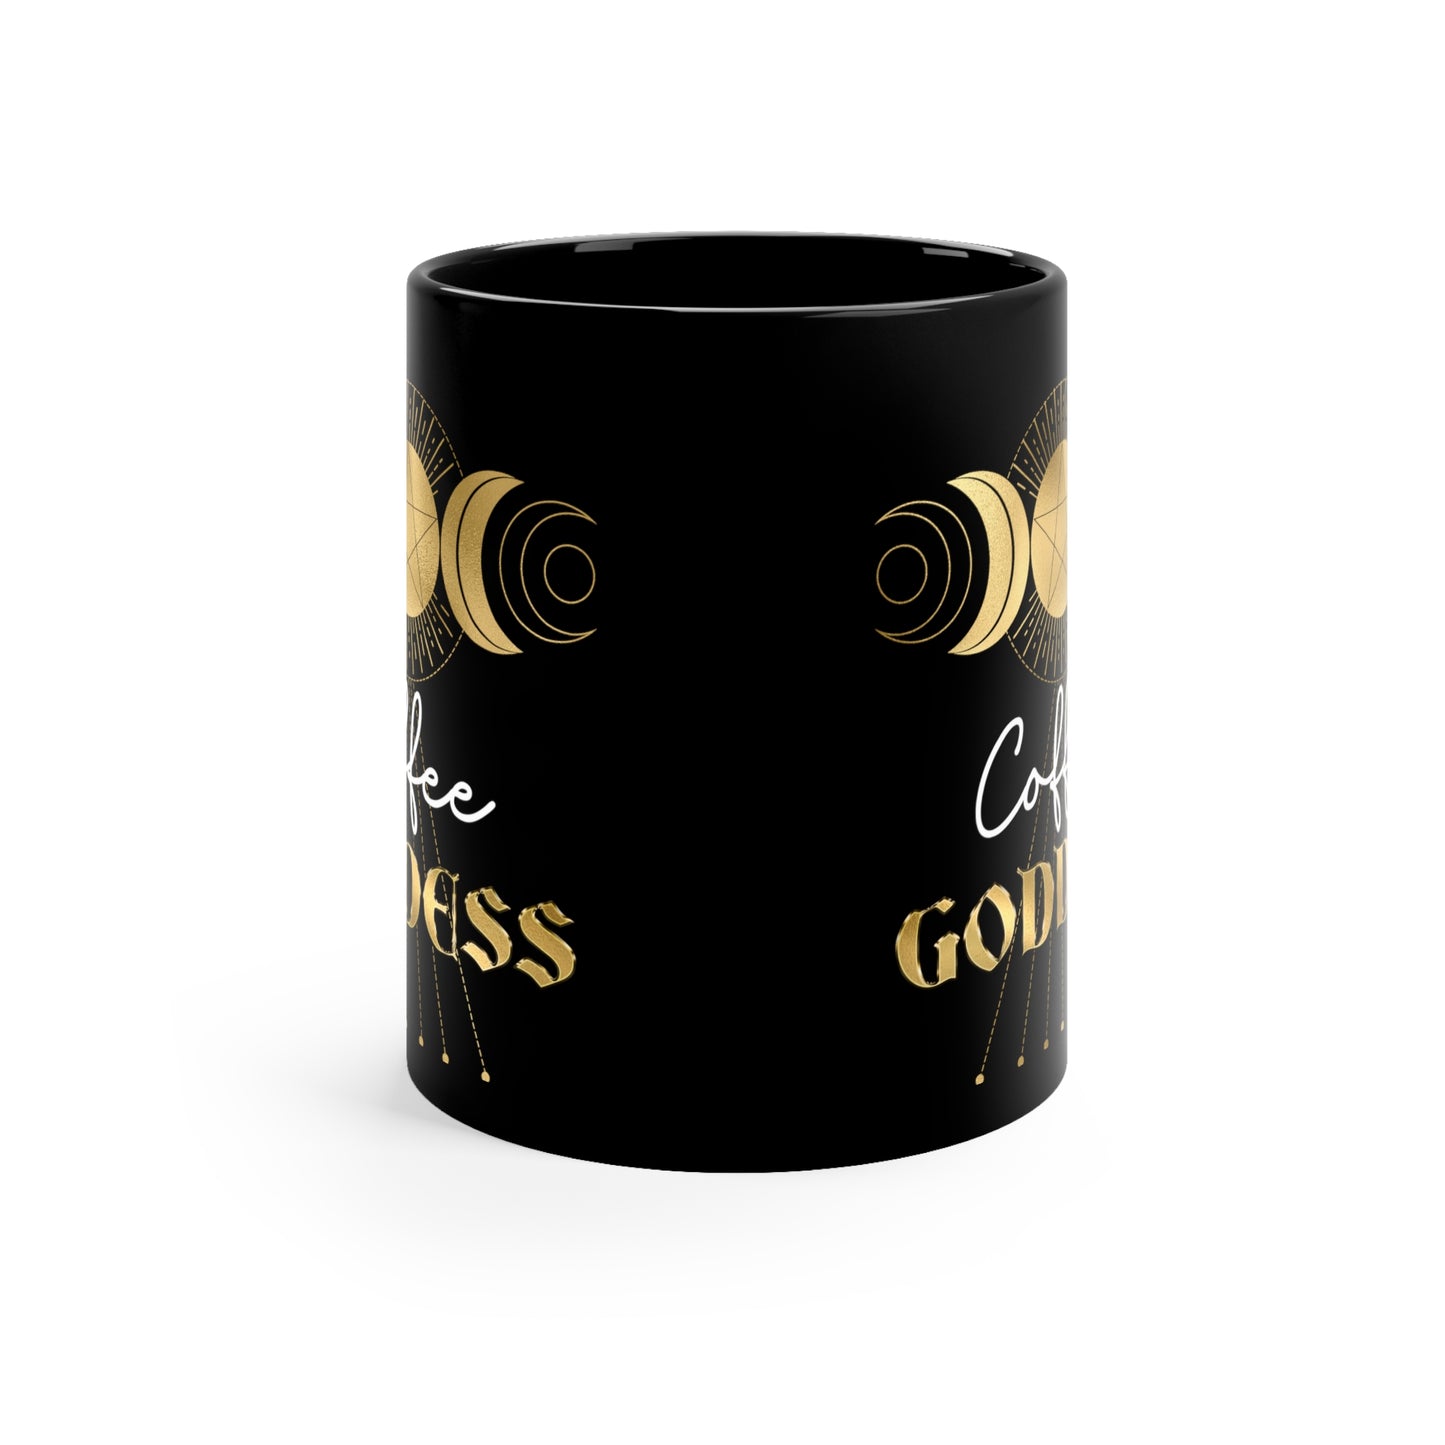 Coffee Goddess Mug